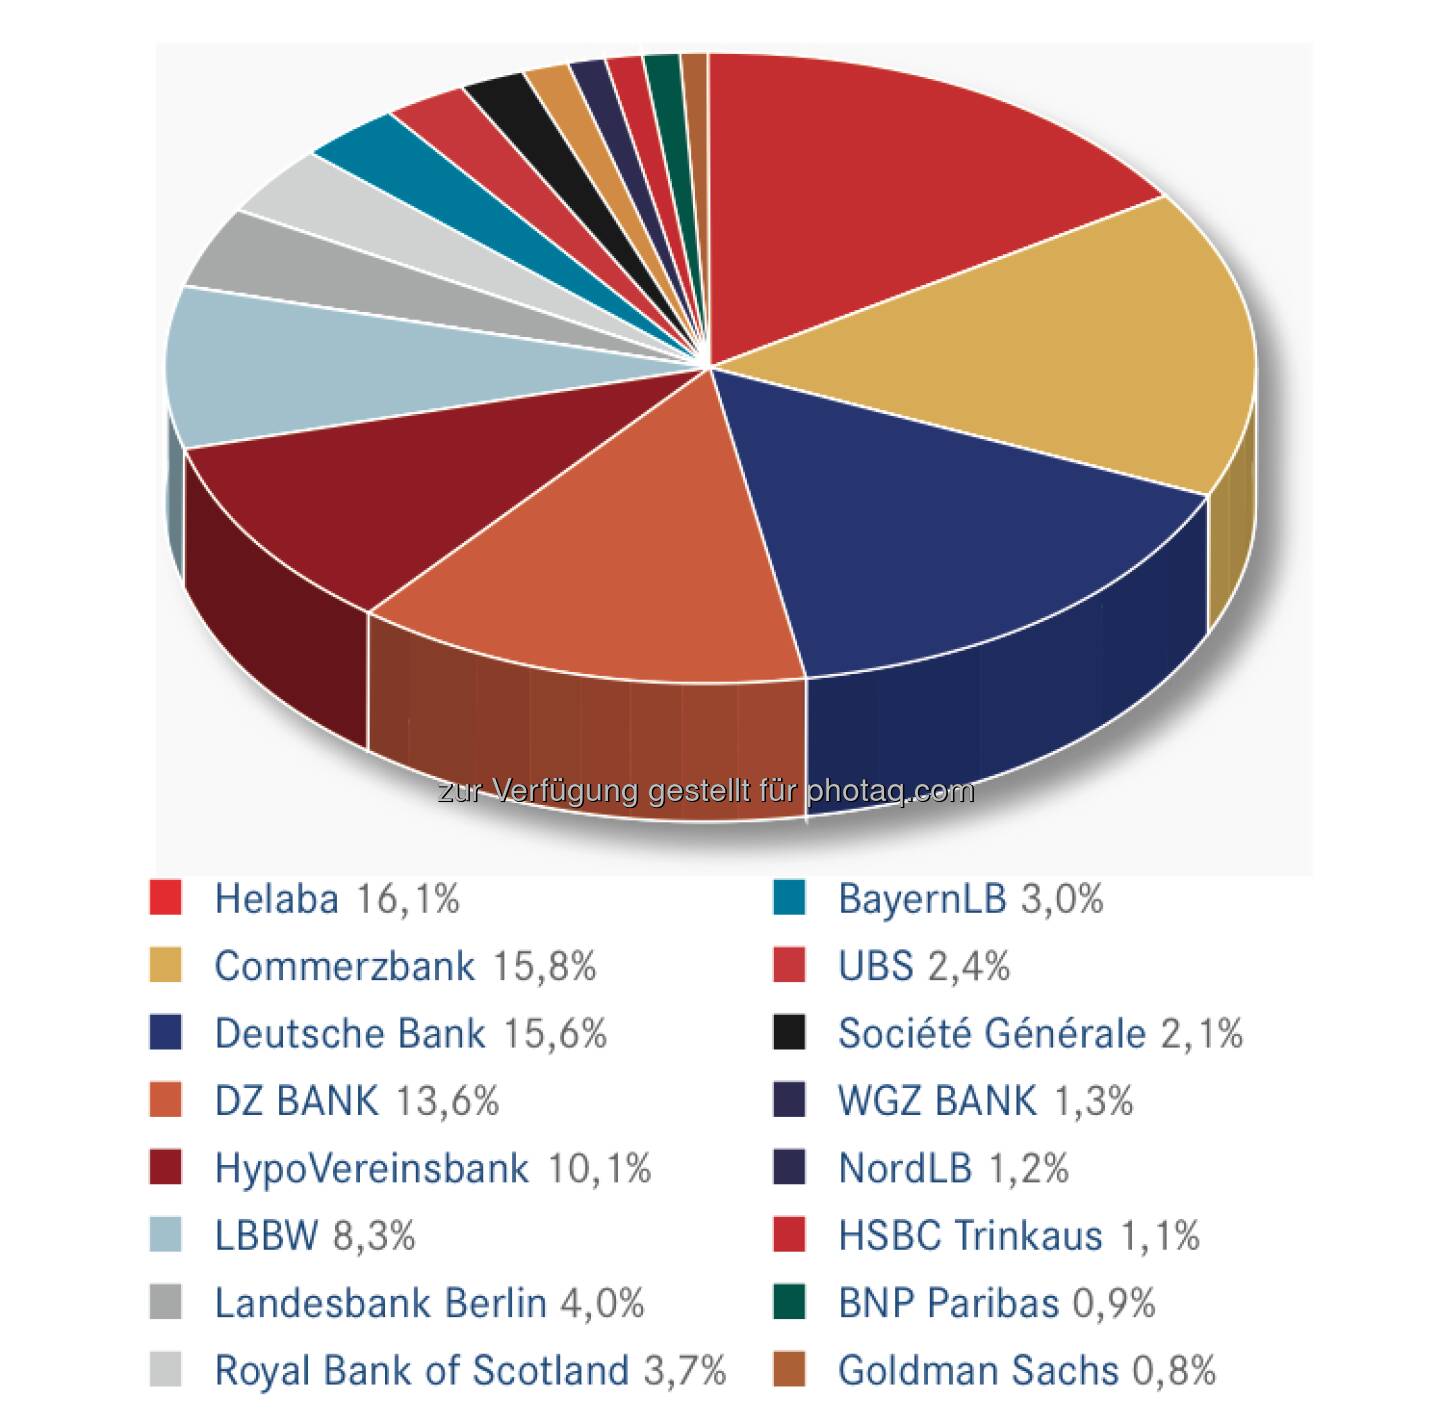 DDV-Statistik Ende 2012: Helaba bei Derivativen Wertpapieren gesamt vorne